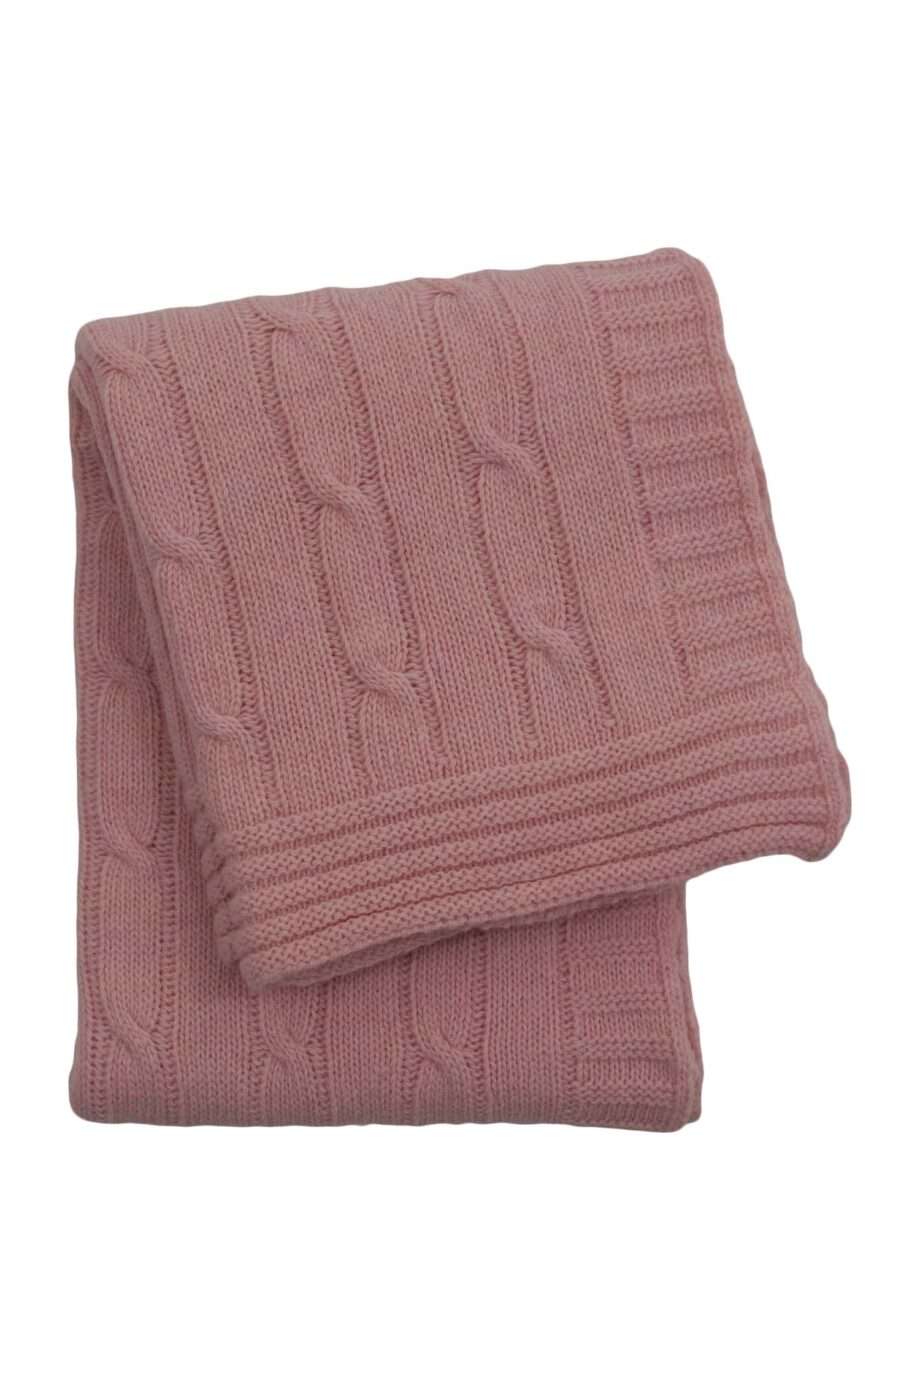 twist baby pink knitted woolen little blanket medium